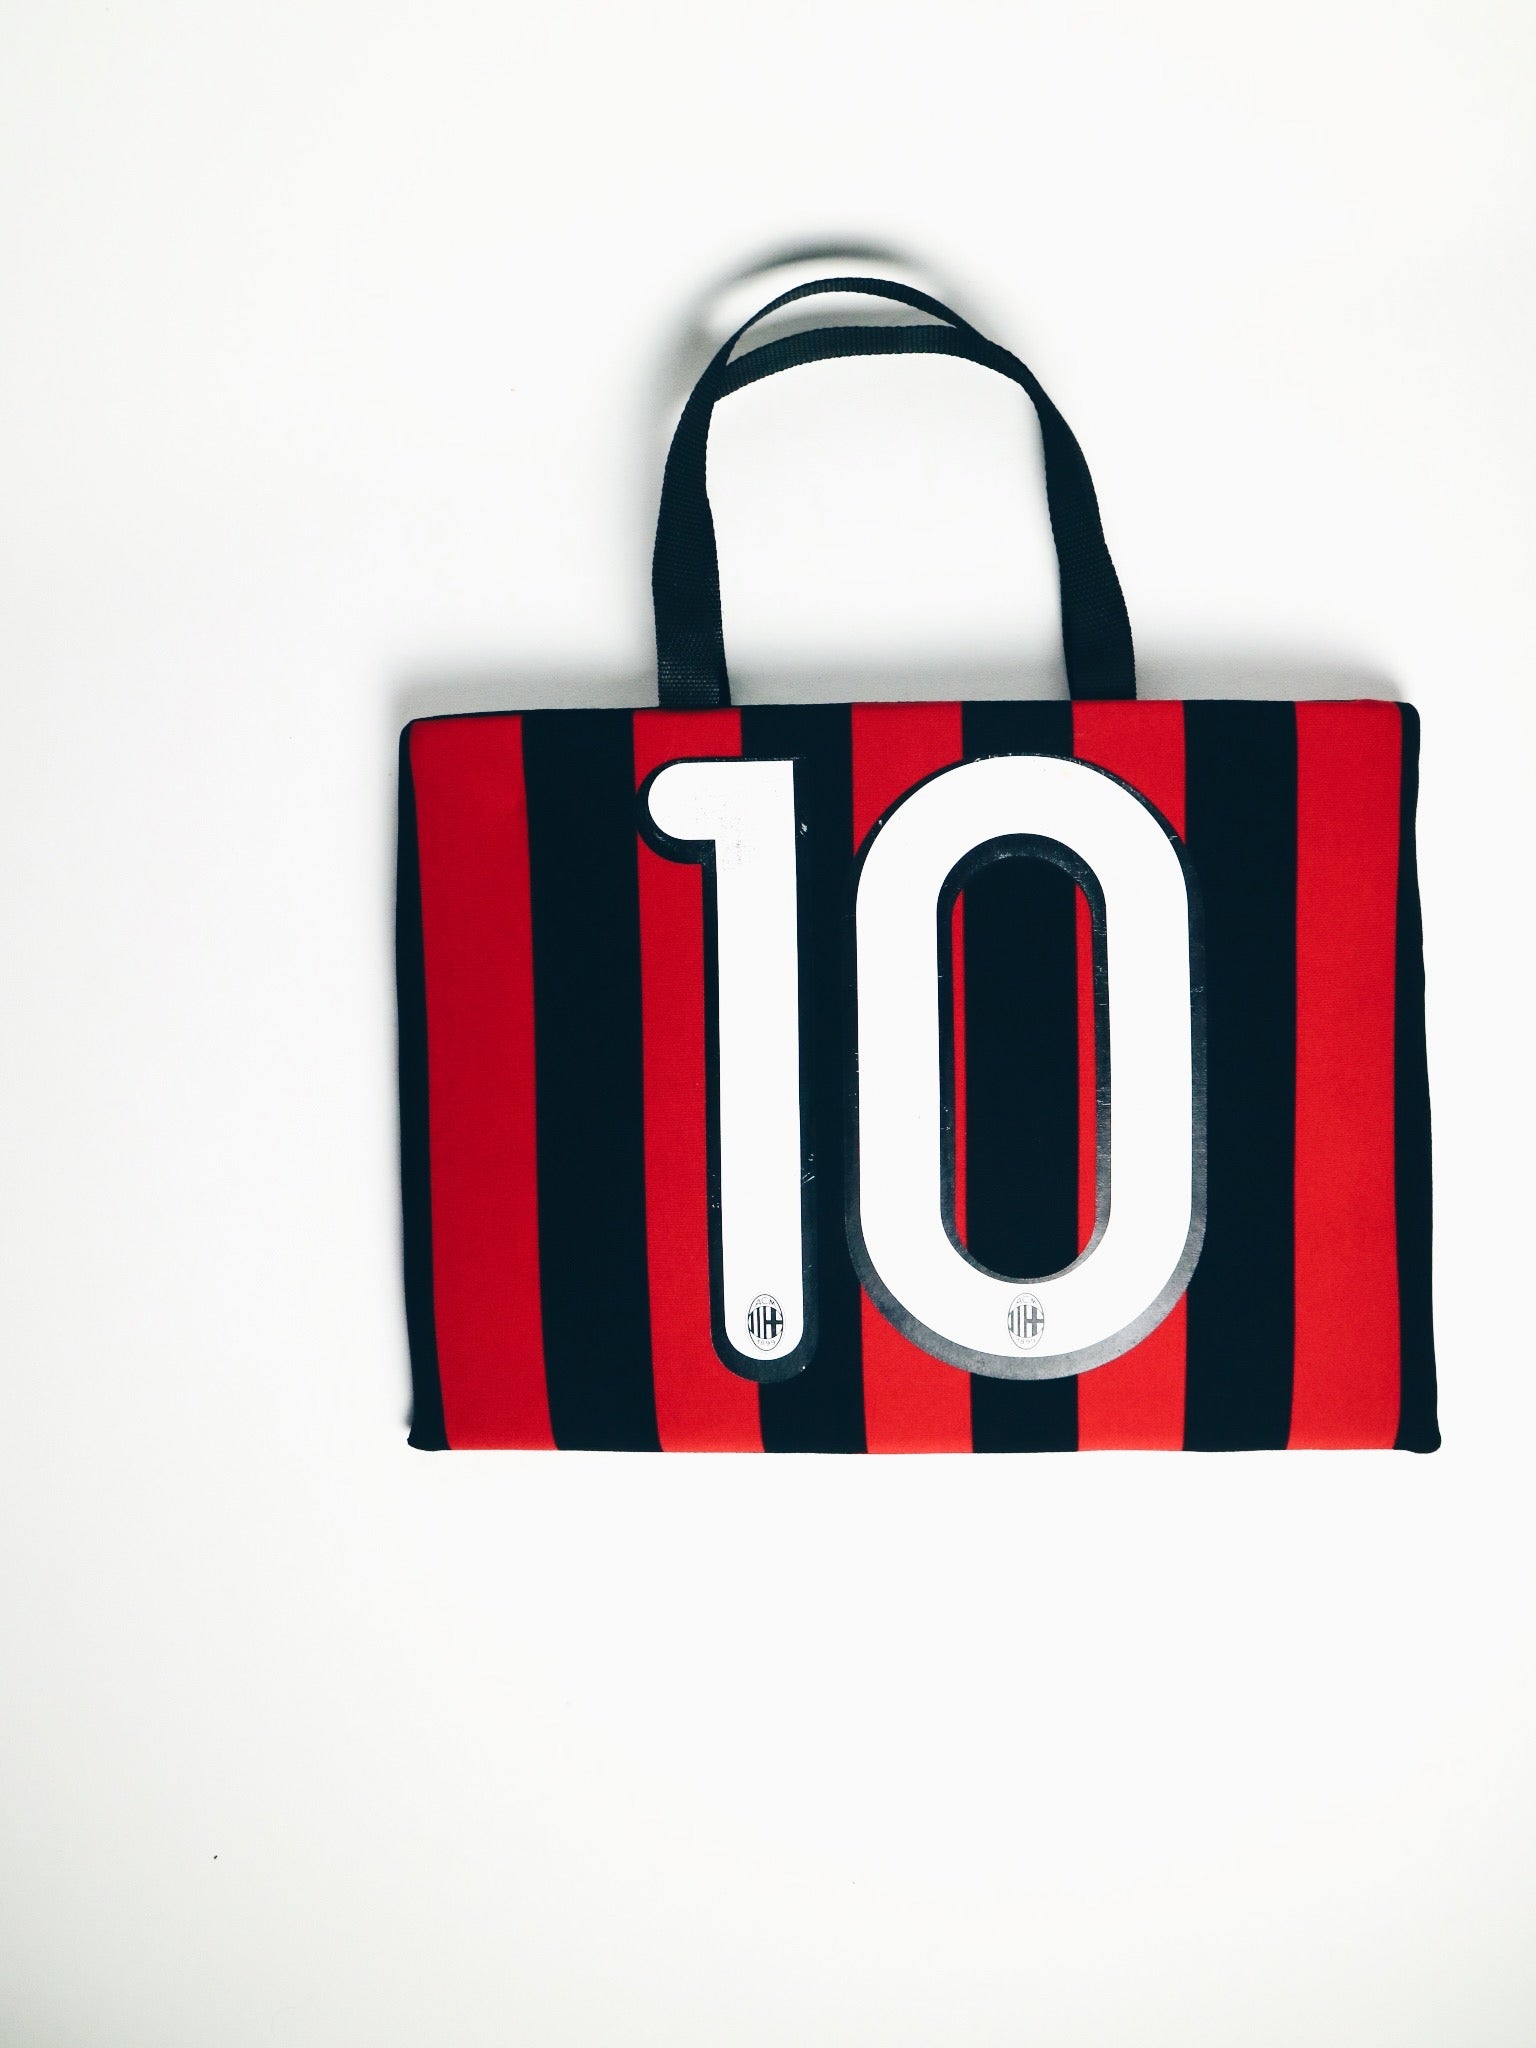 AC Milan 15 inch Laptop Bag-Unwanted FC-stride